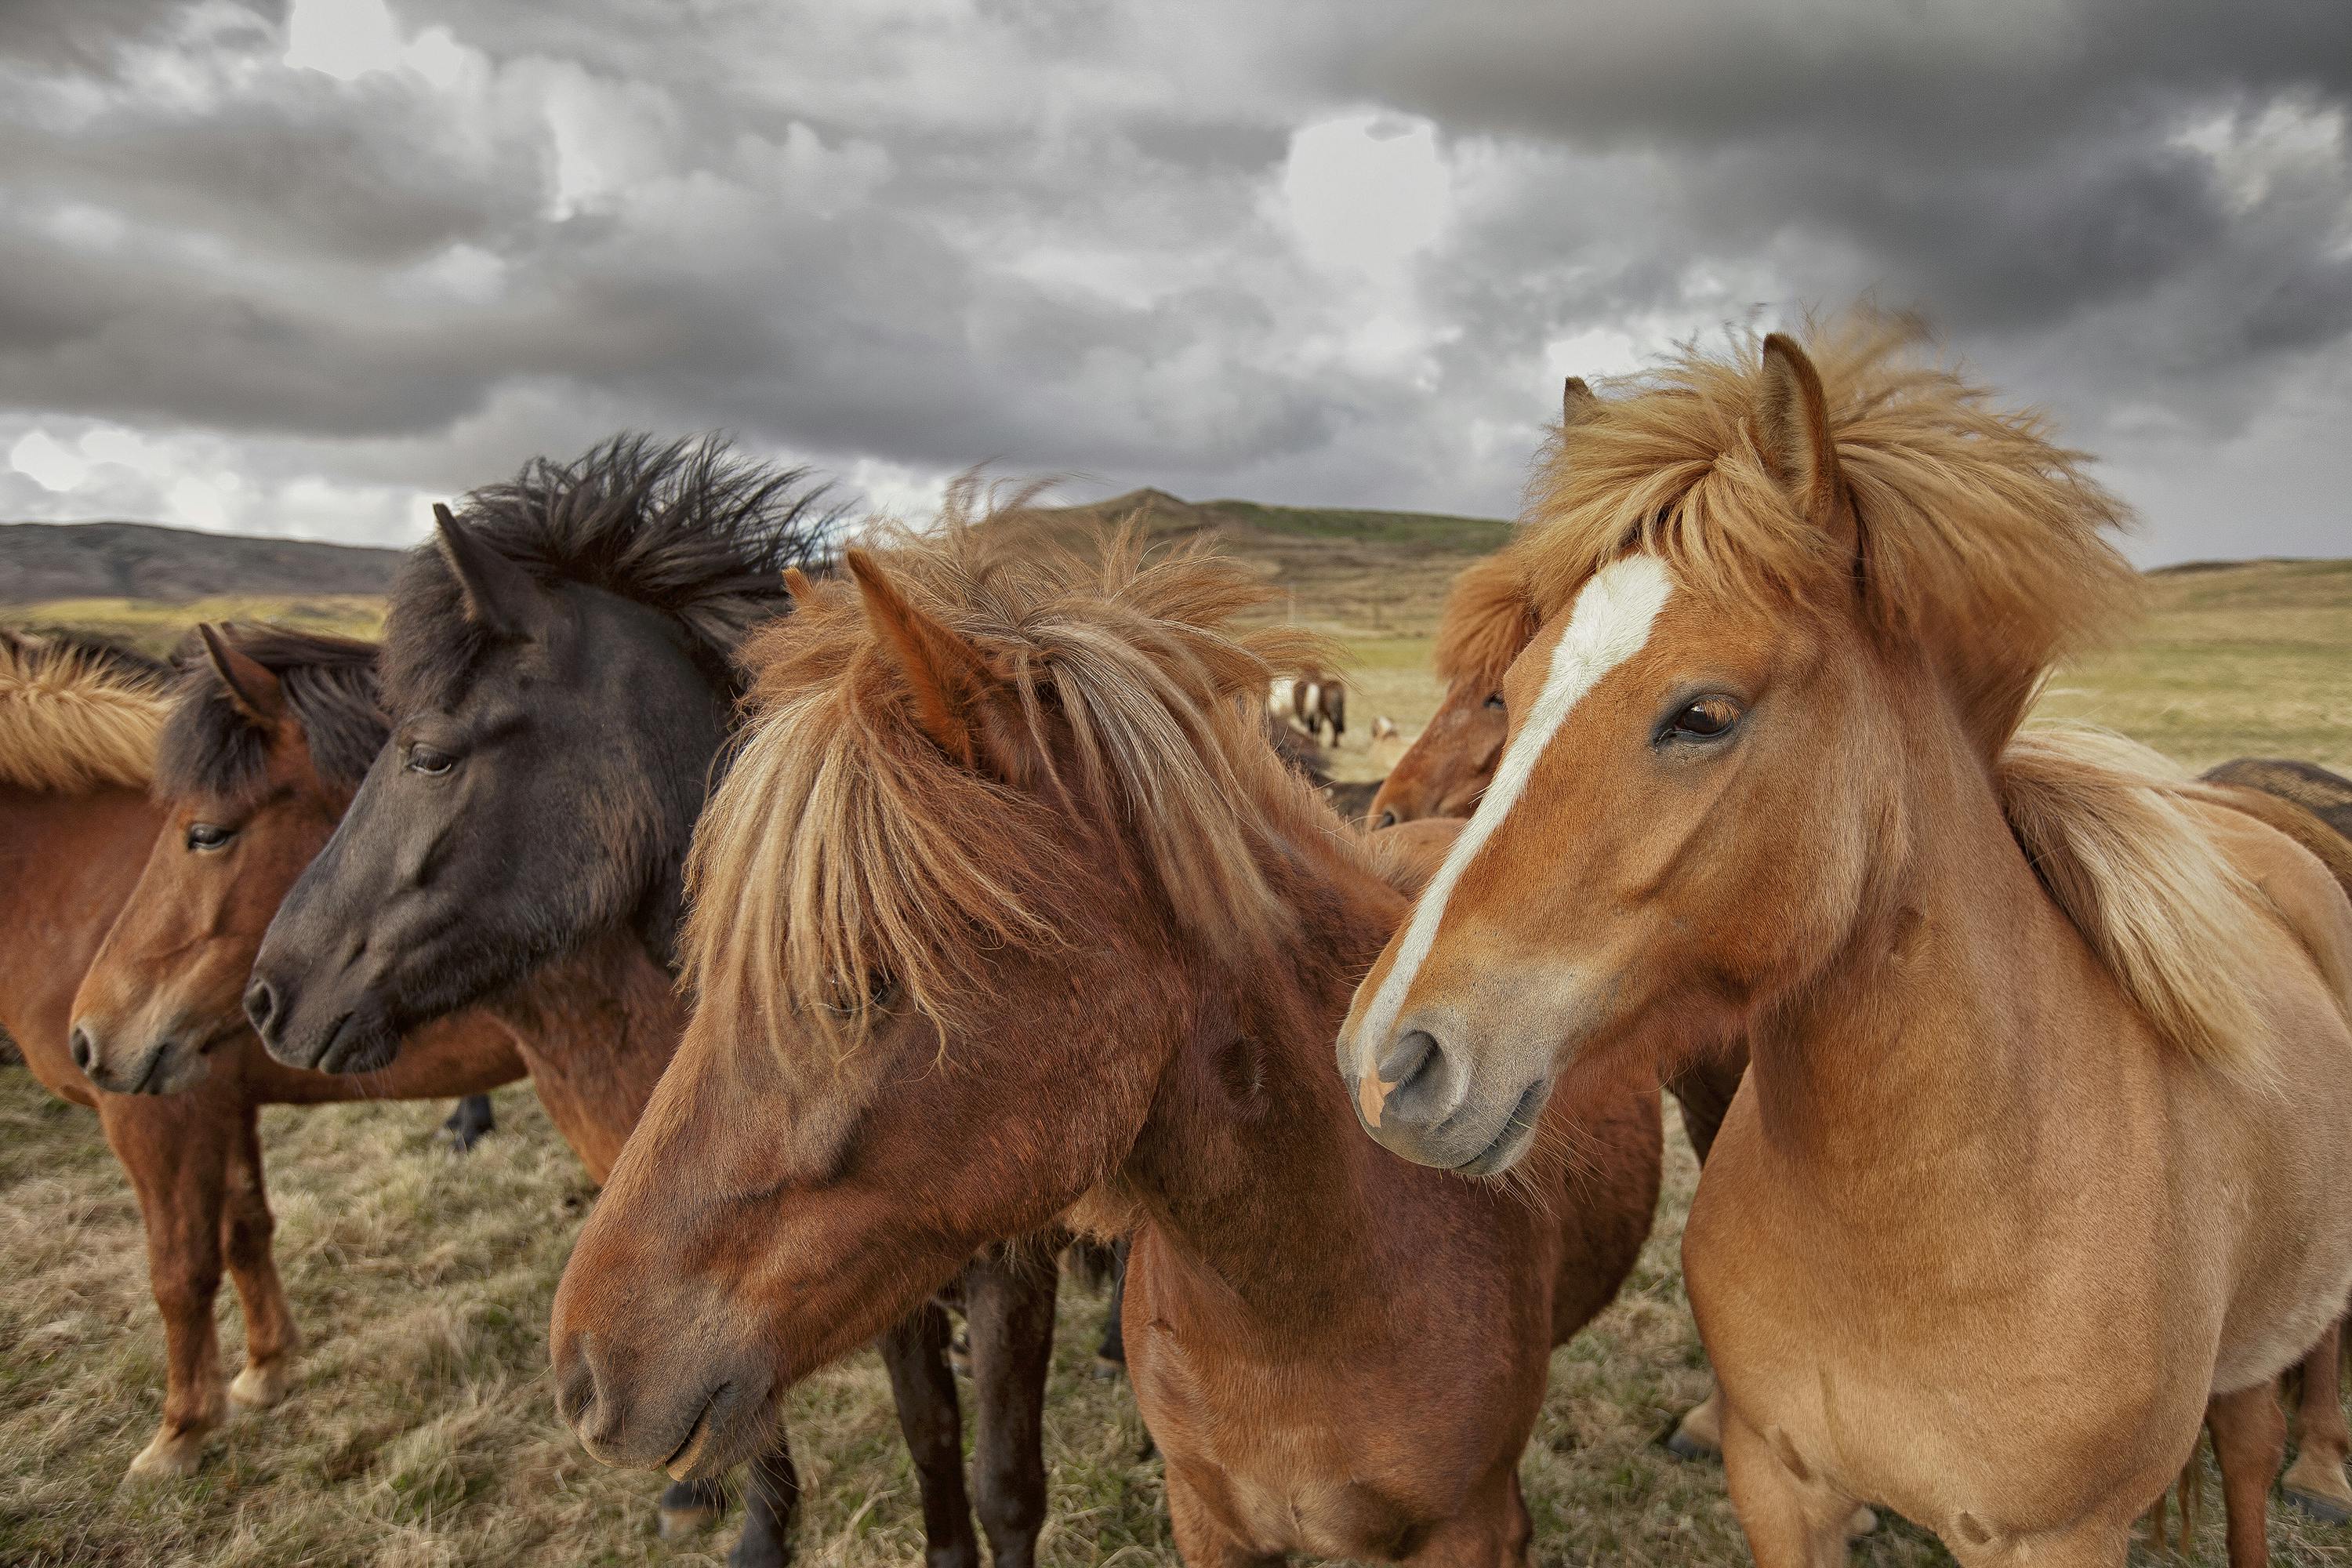 Se un cavallo islandese lascia il paese, gli è vietato tornare, al fine di mantenere la razza pura, sana e isolata.